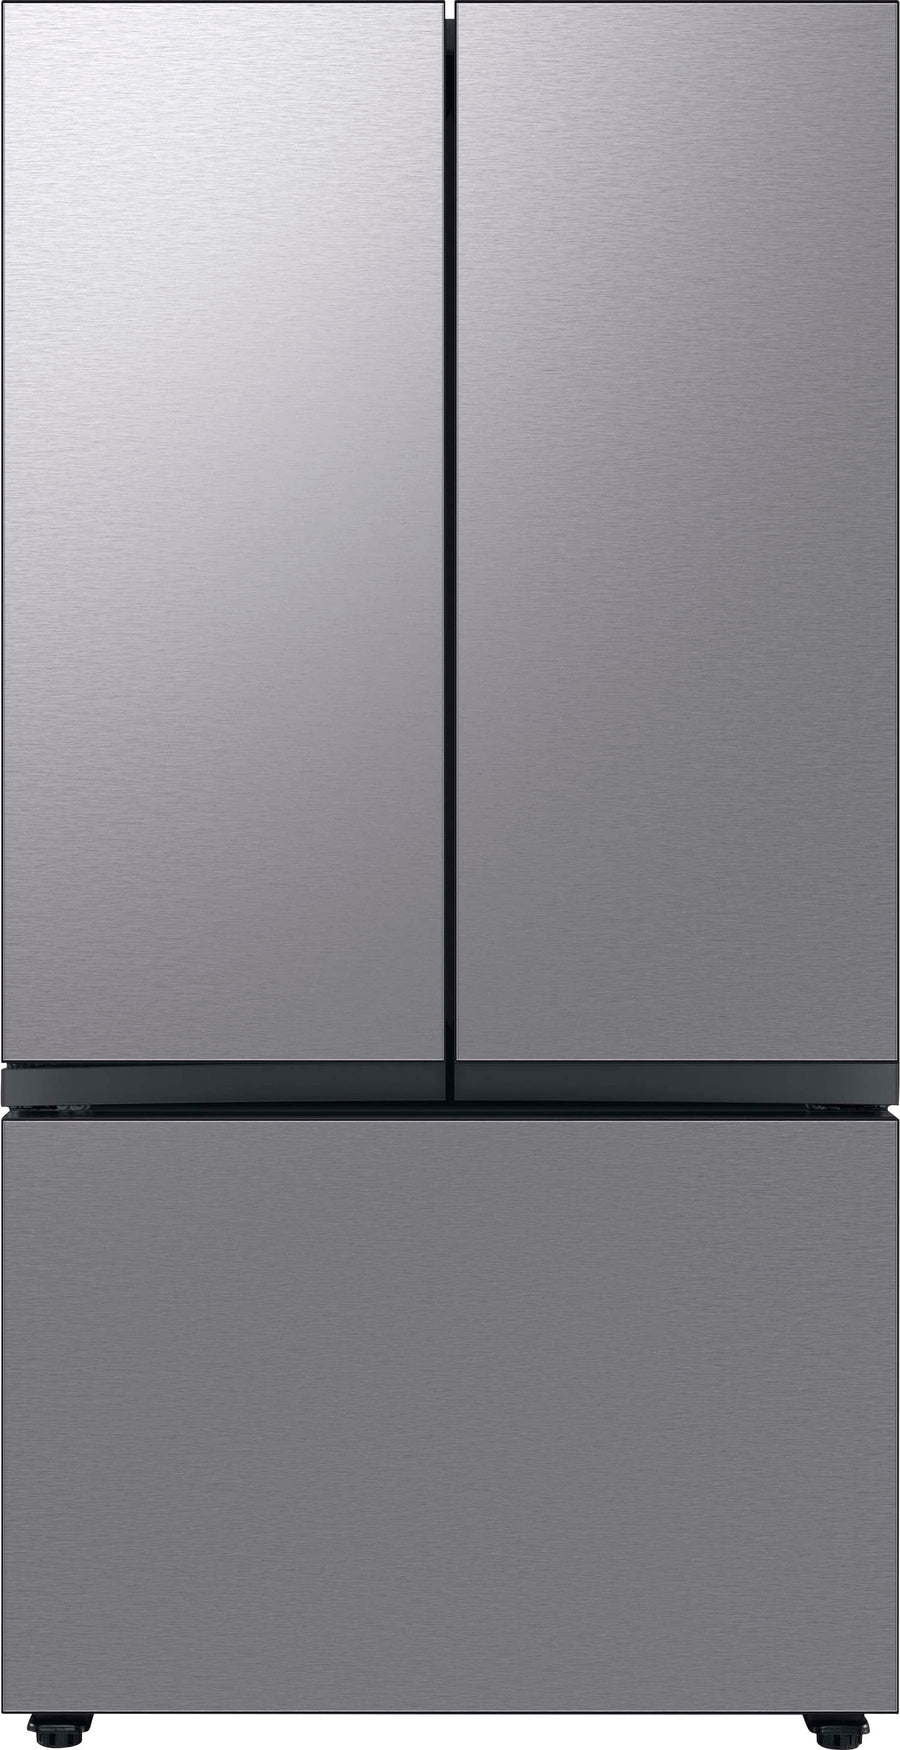 Samsung - Bespoke 30 cu. ft. 3-Door French Door Refrigerator with Beverage Center - Stainless steel_0